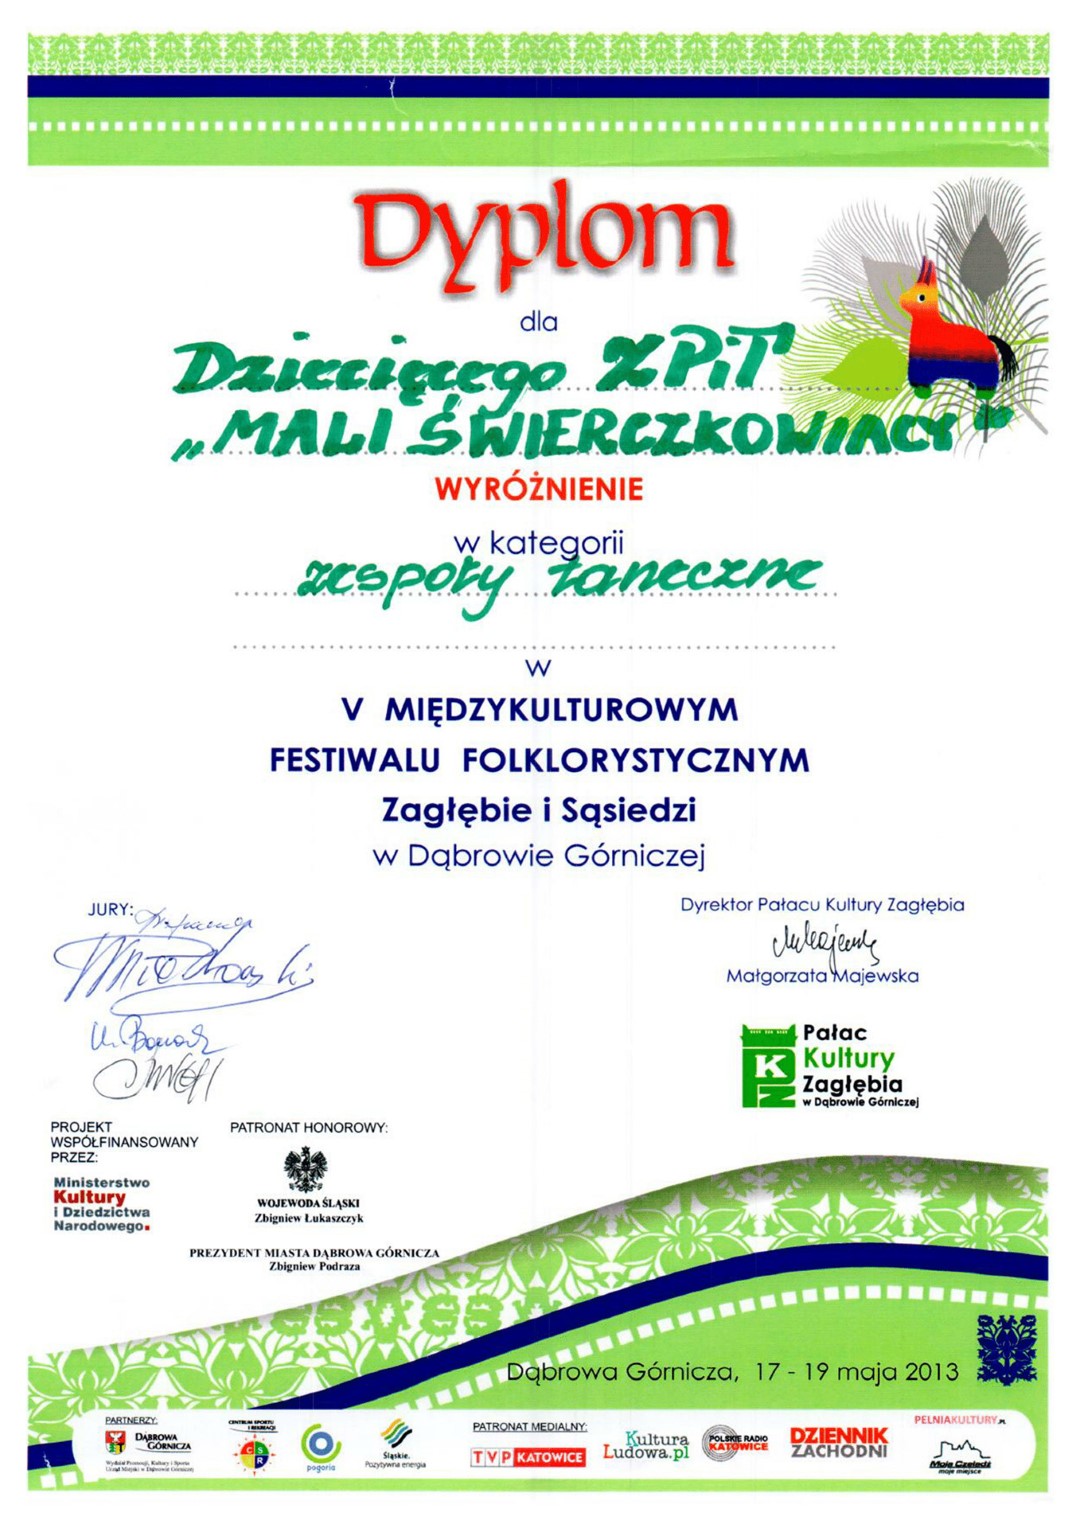 Wyróżnienie dla ZPiT Mali Świerczkowiacy w V Międzykulturowym Festiwalu Folklorystycznym Zagłębie i Sąsiedzi.